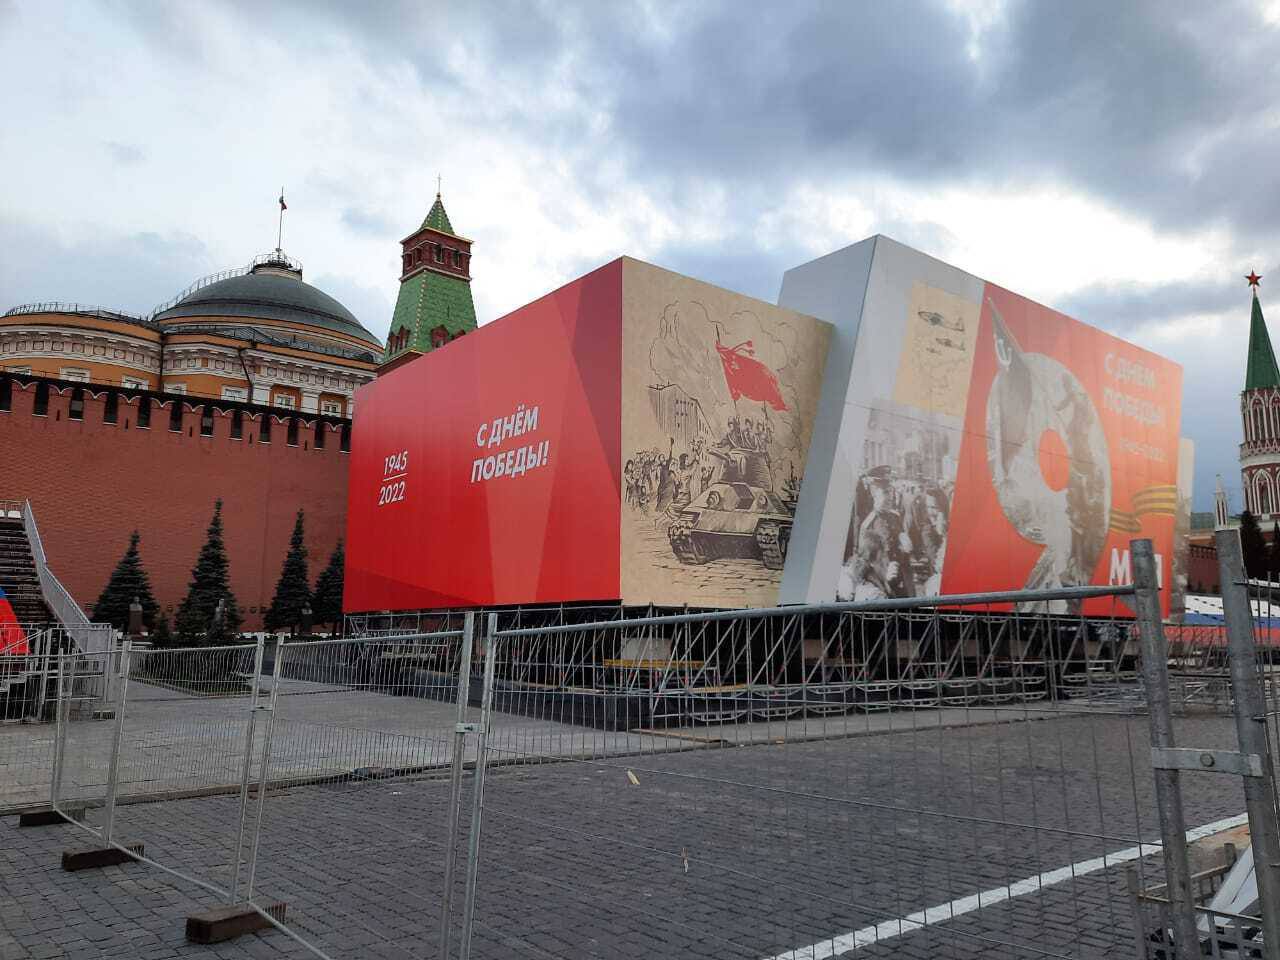 мавзолей в москве на красной площади